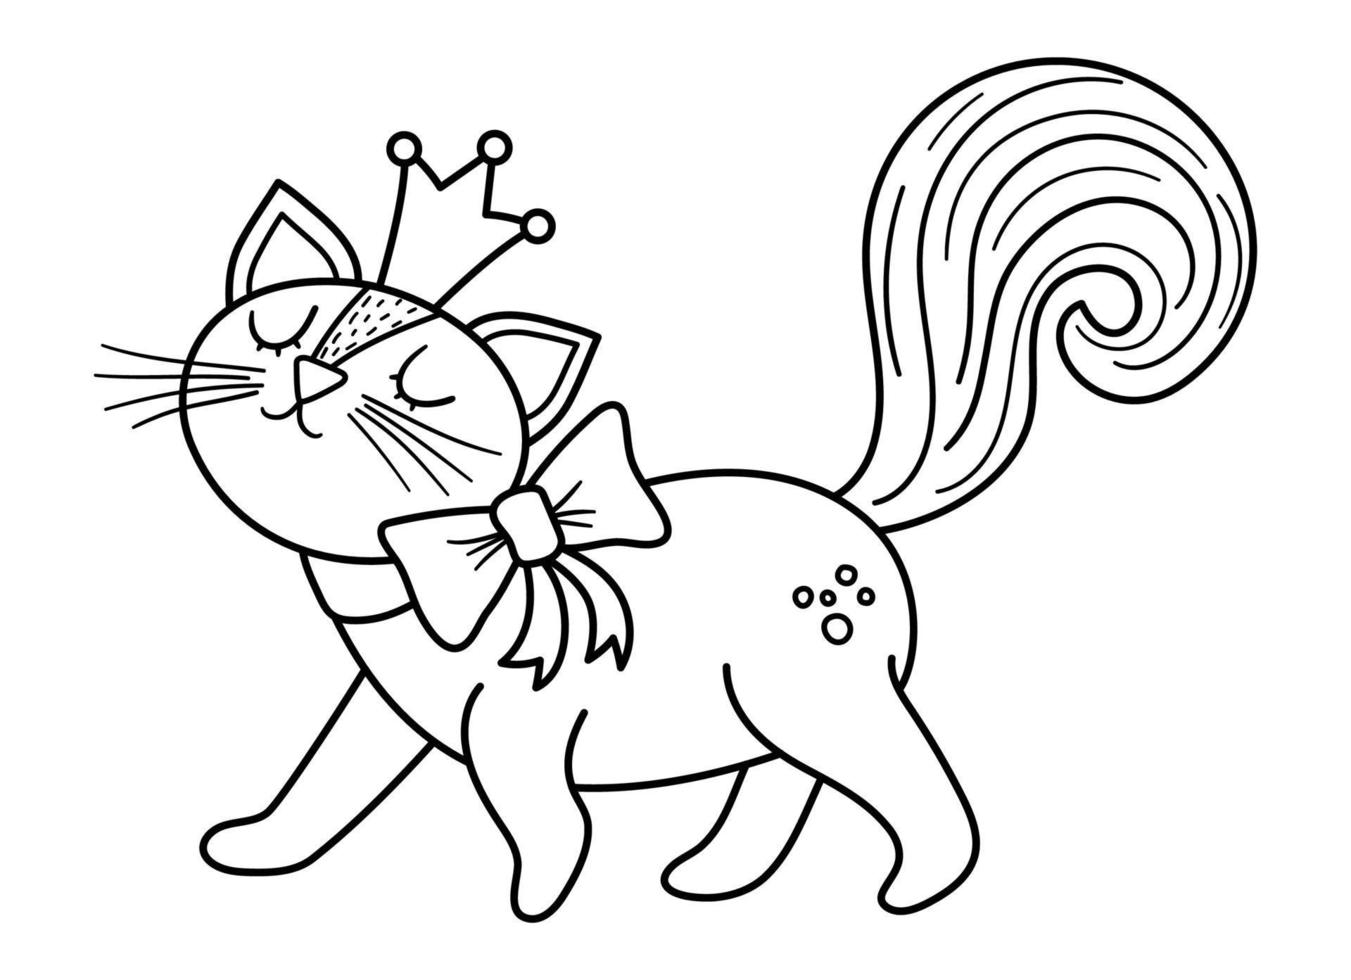 Märchen Schwarz-Weiß-Vektor Katzenprinzessin. Fantasielinie Tier in der Krone lokalisiert auf weißem Hintergrund. Märchenfigur. Cartoon magisches Symbol oder Malseite vektor